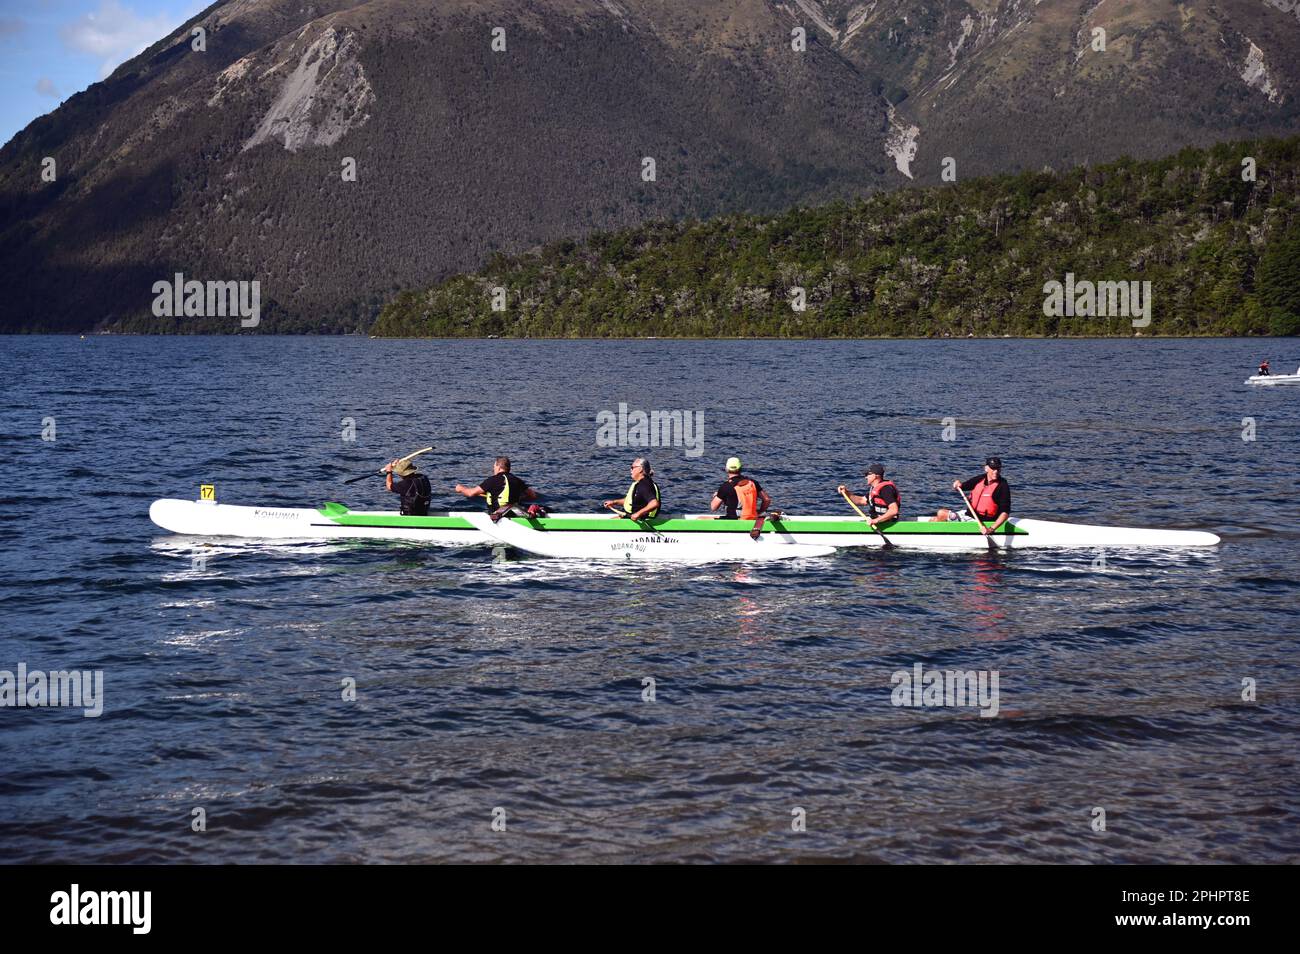 Les participants au club de canoë annuel Maitahi Outrigger participent à leur régate annuelle sur le lac Rotoita, St Arnaud, dans les lacs Nelson. Banque D'Images